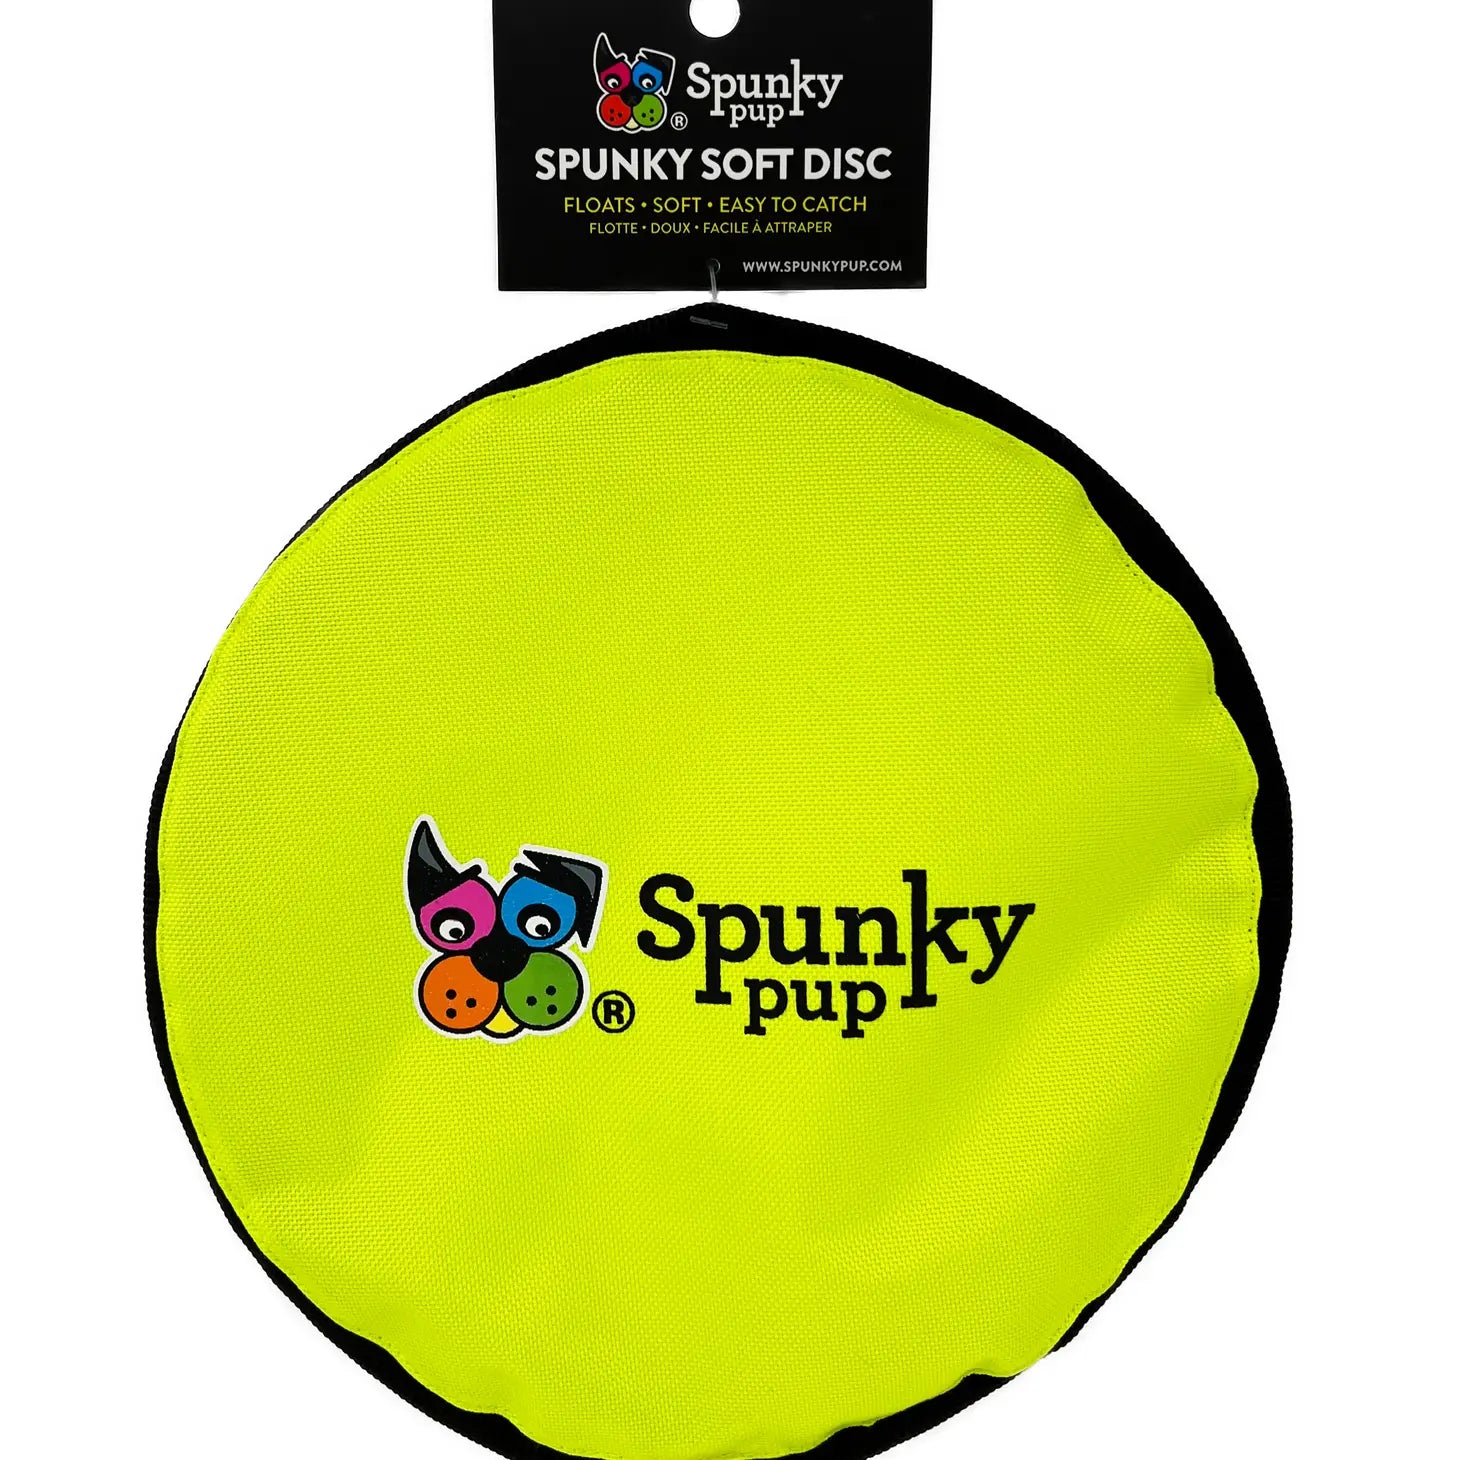 Spunky Soft Disc